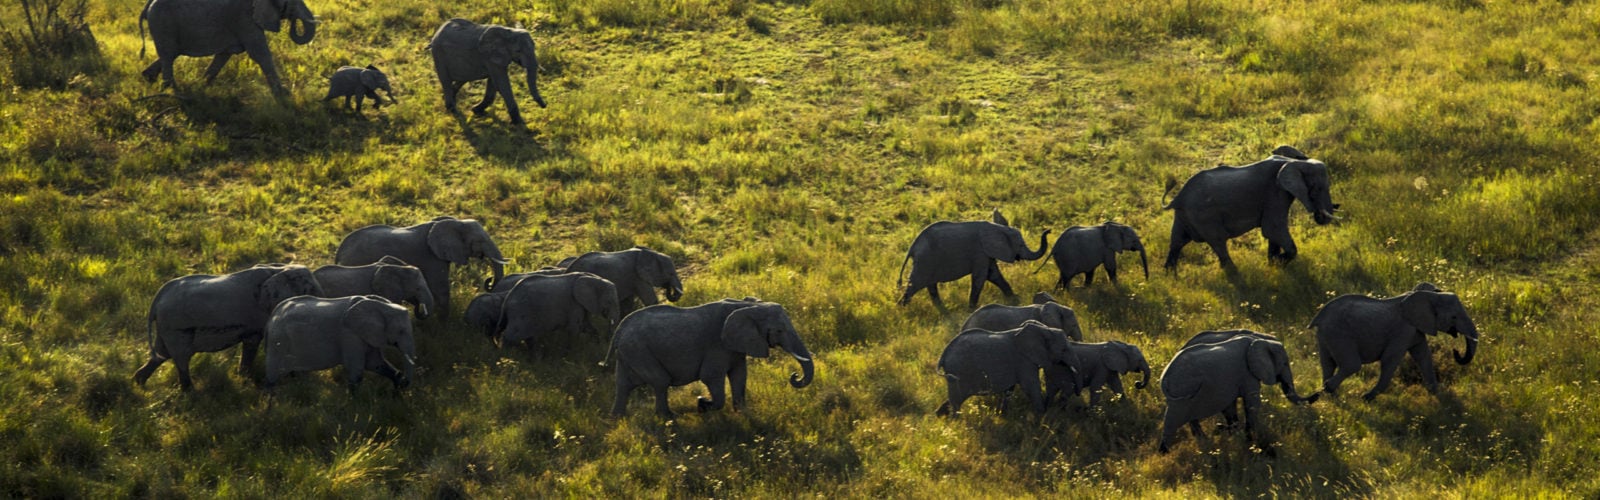 elephant-herd-okavango-delta-botswana